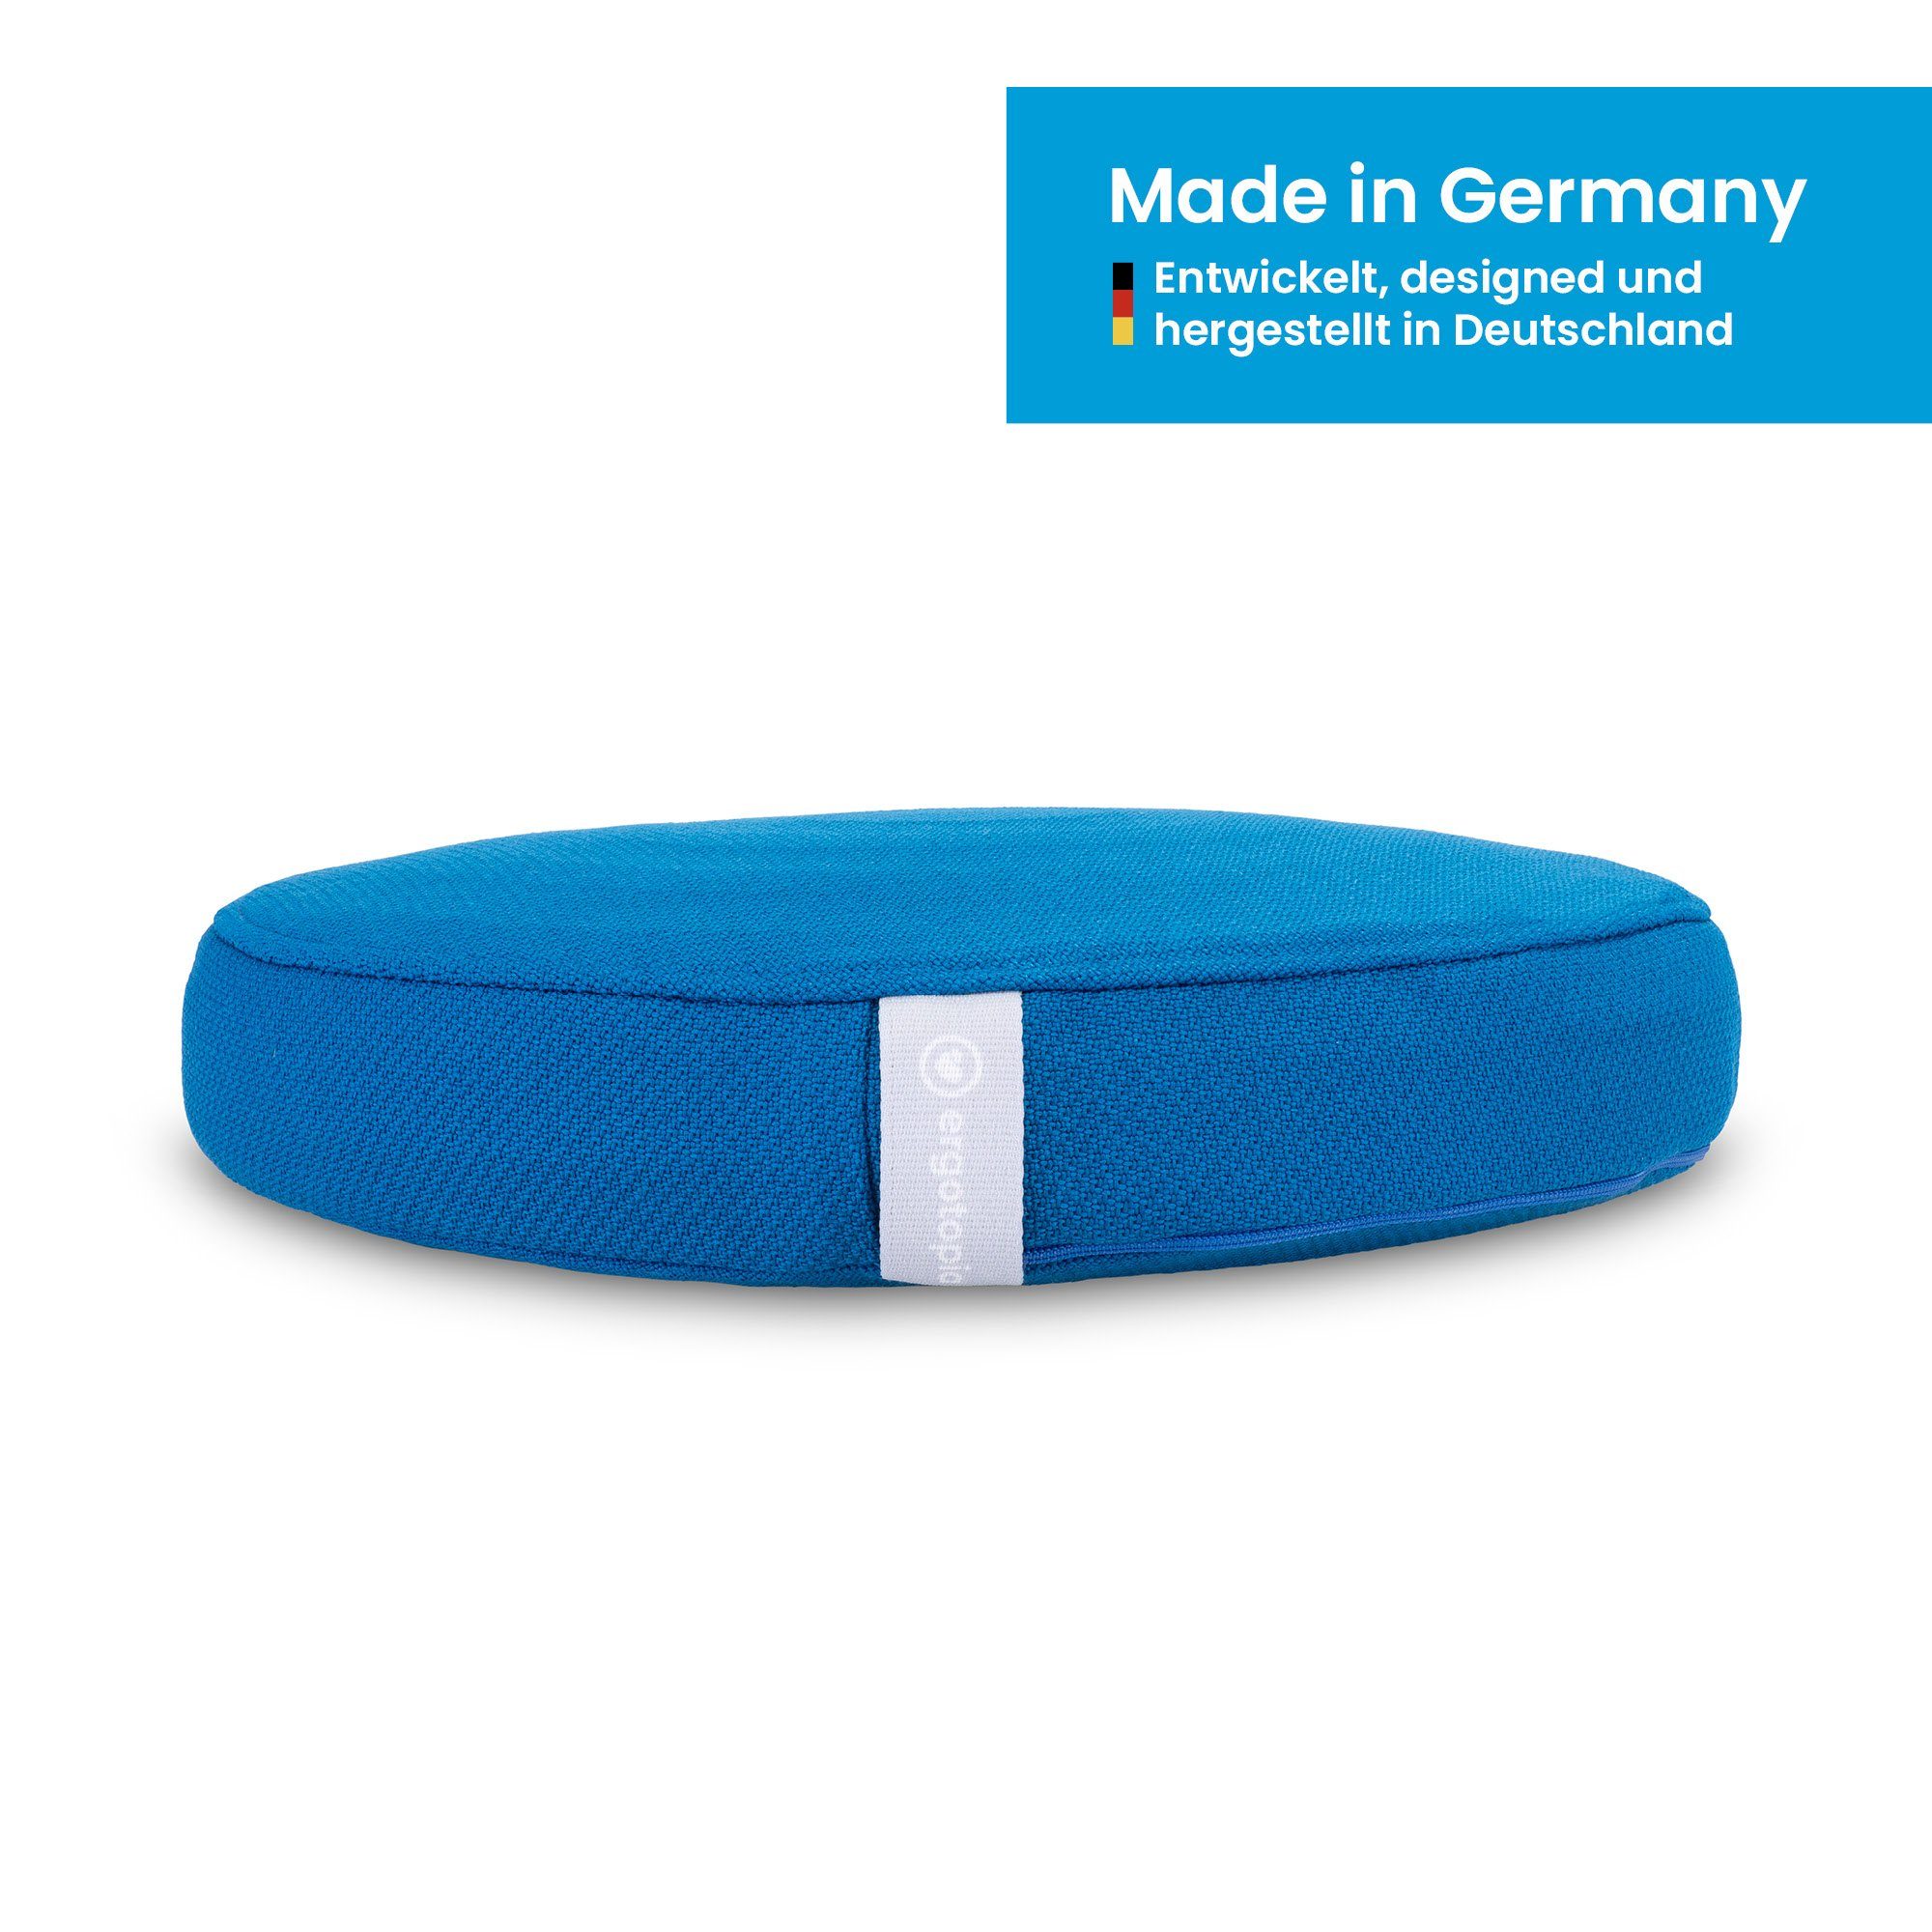 Blau Gleichgewichtskissen 33 Kissenbezug in und Bezug, Büro oder Ballsitzkissen, zu Balancekissen cm für Ergotopia handgefertigt, für Germany, Hause Made